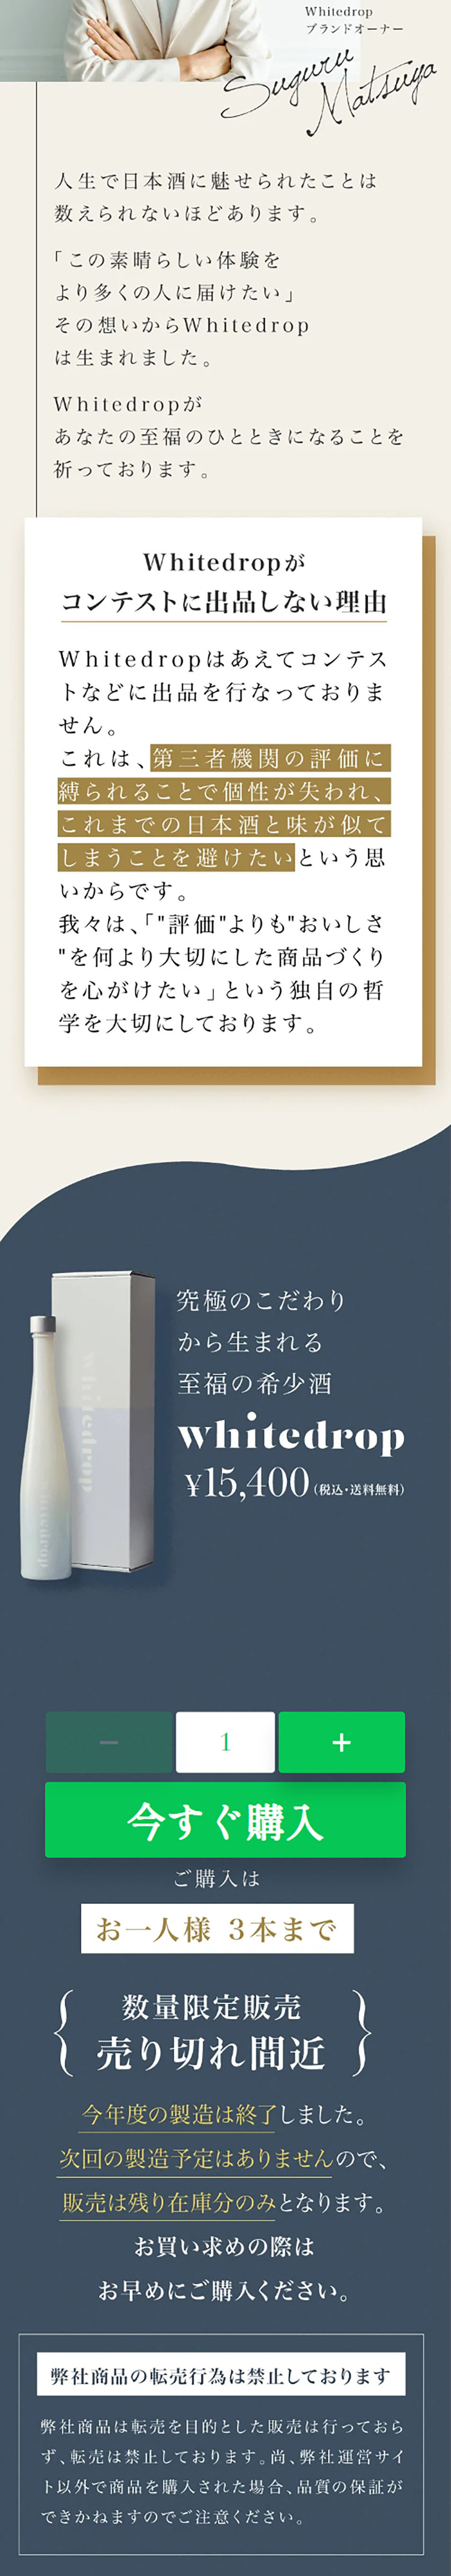 日本酒ブランド whitedrop_pc_3